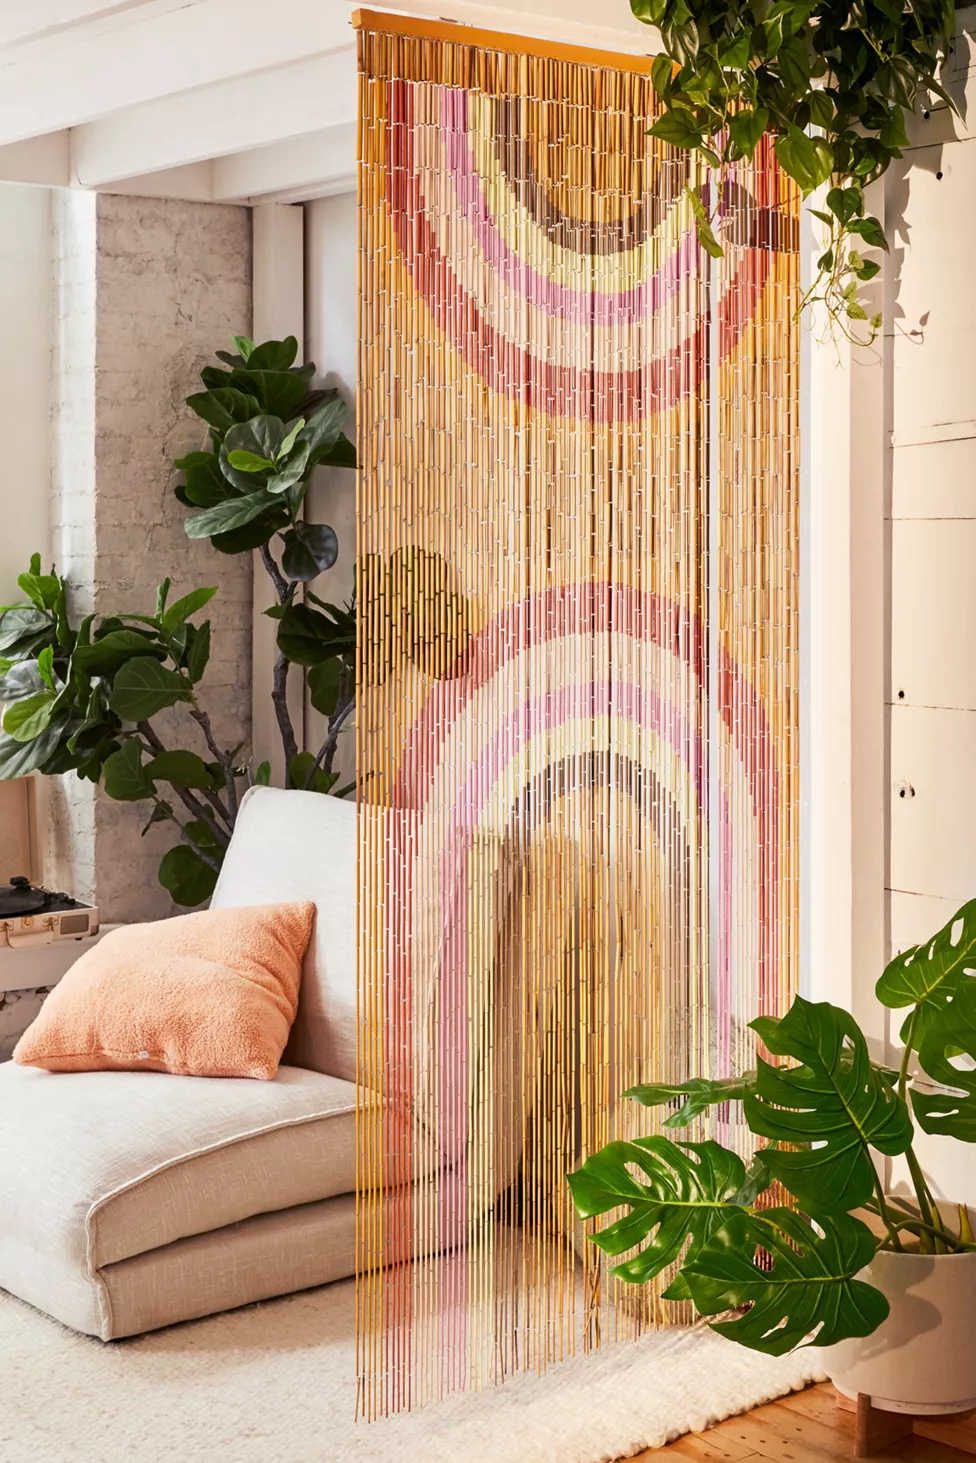 Get An Original Bamboo Curtain